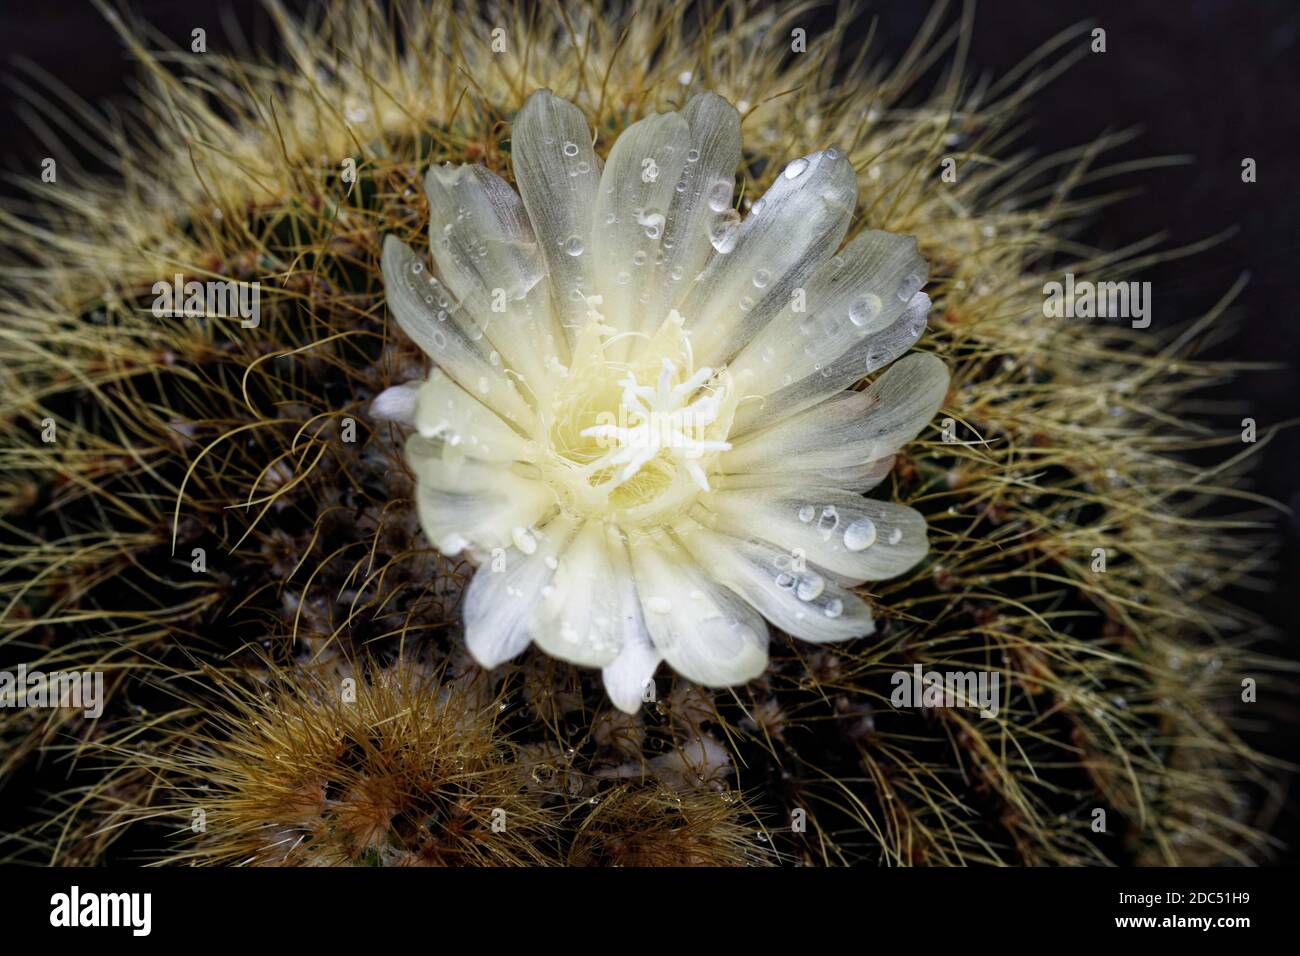 Parodia schumanniana ist ein mehrjähriger kugelförmiger bis säulenförmiger Kaktus. Die Blüten blühen im Sommer und sind zitronengelb bis goldgelb. Stockfoto